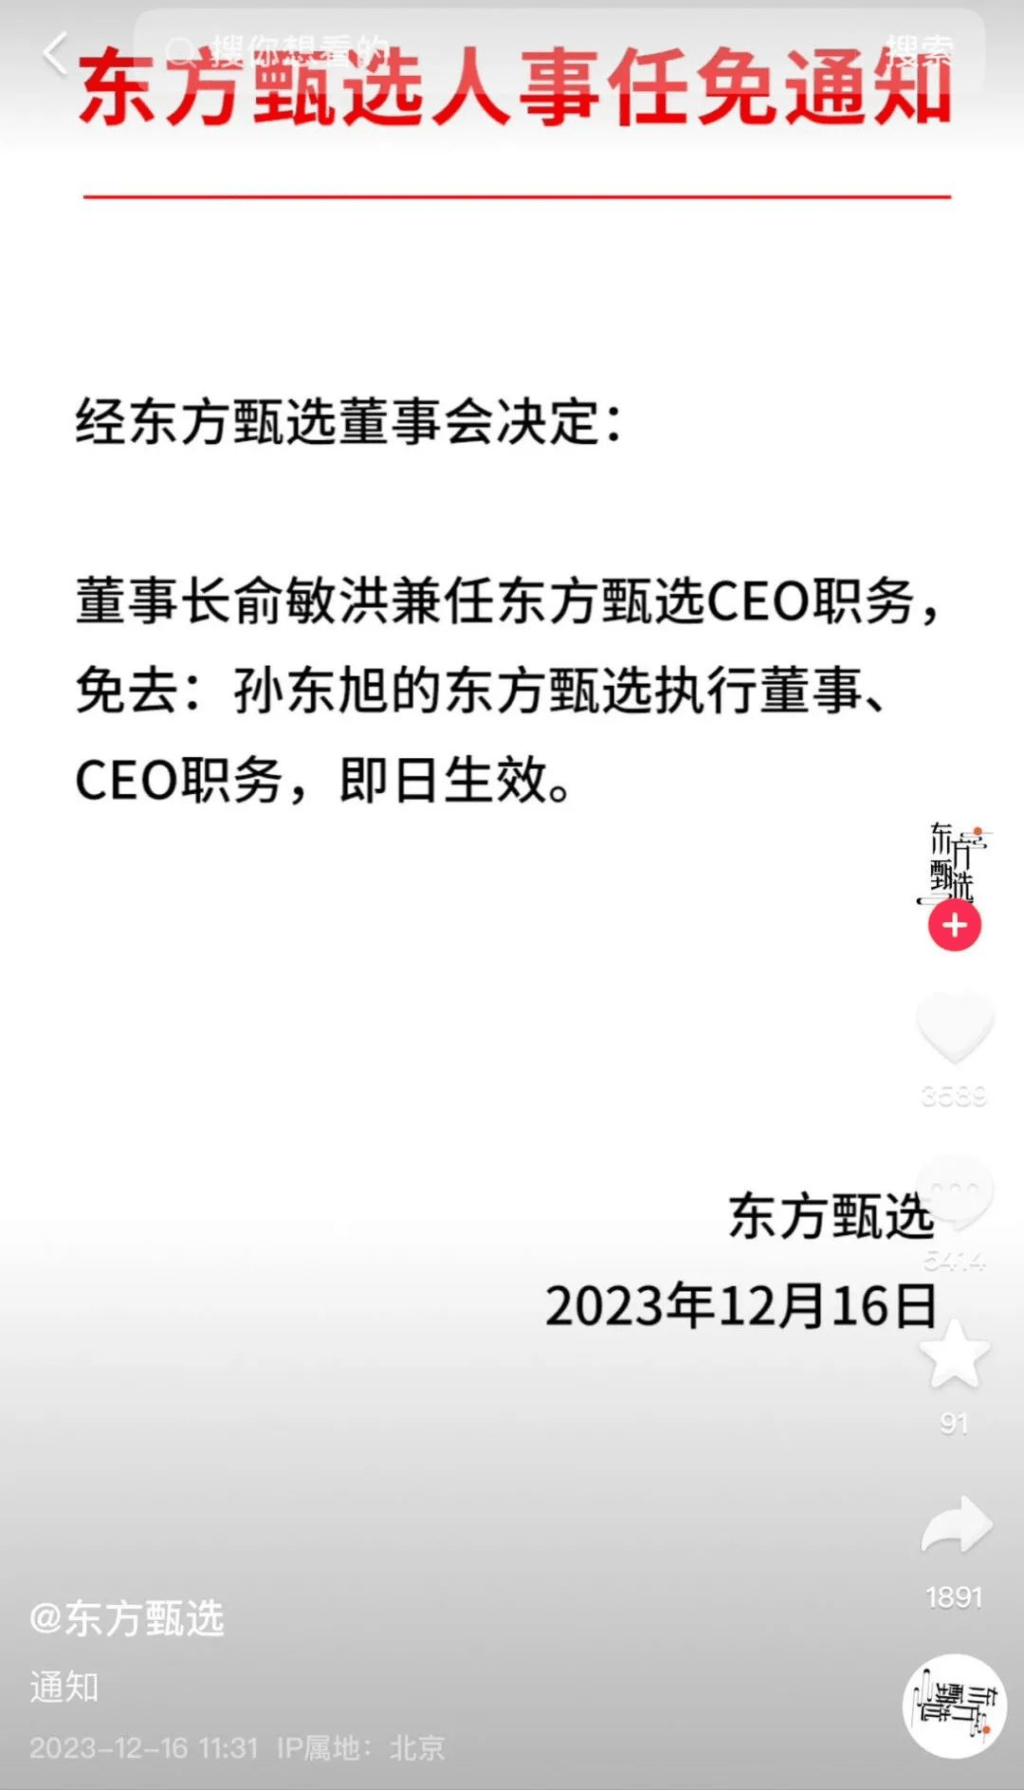 东方甄选CEO孙东旭被免职。即日生效。